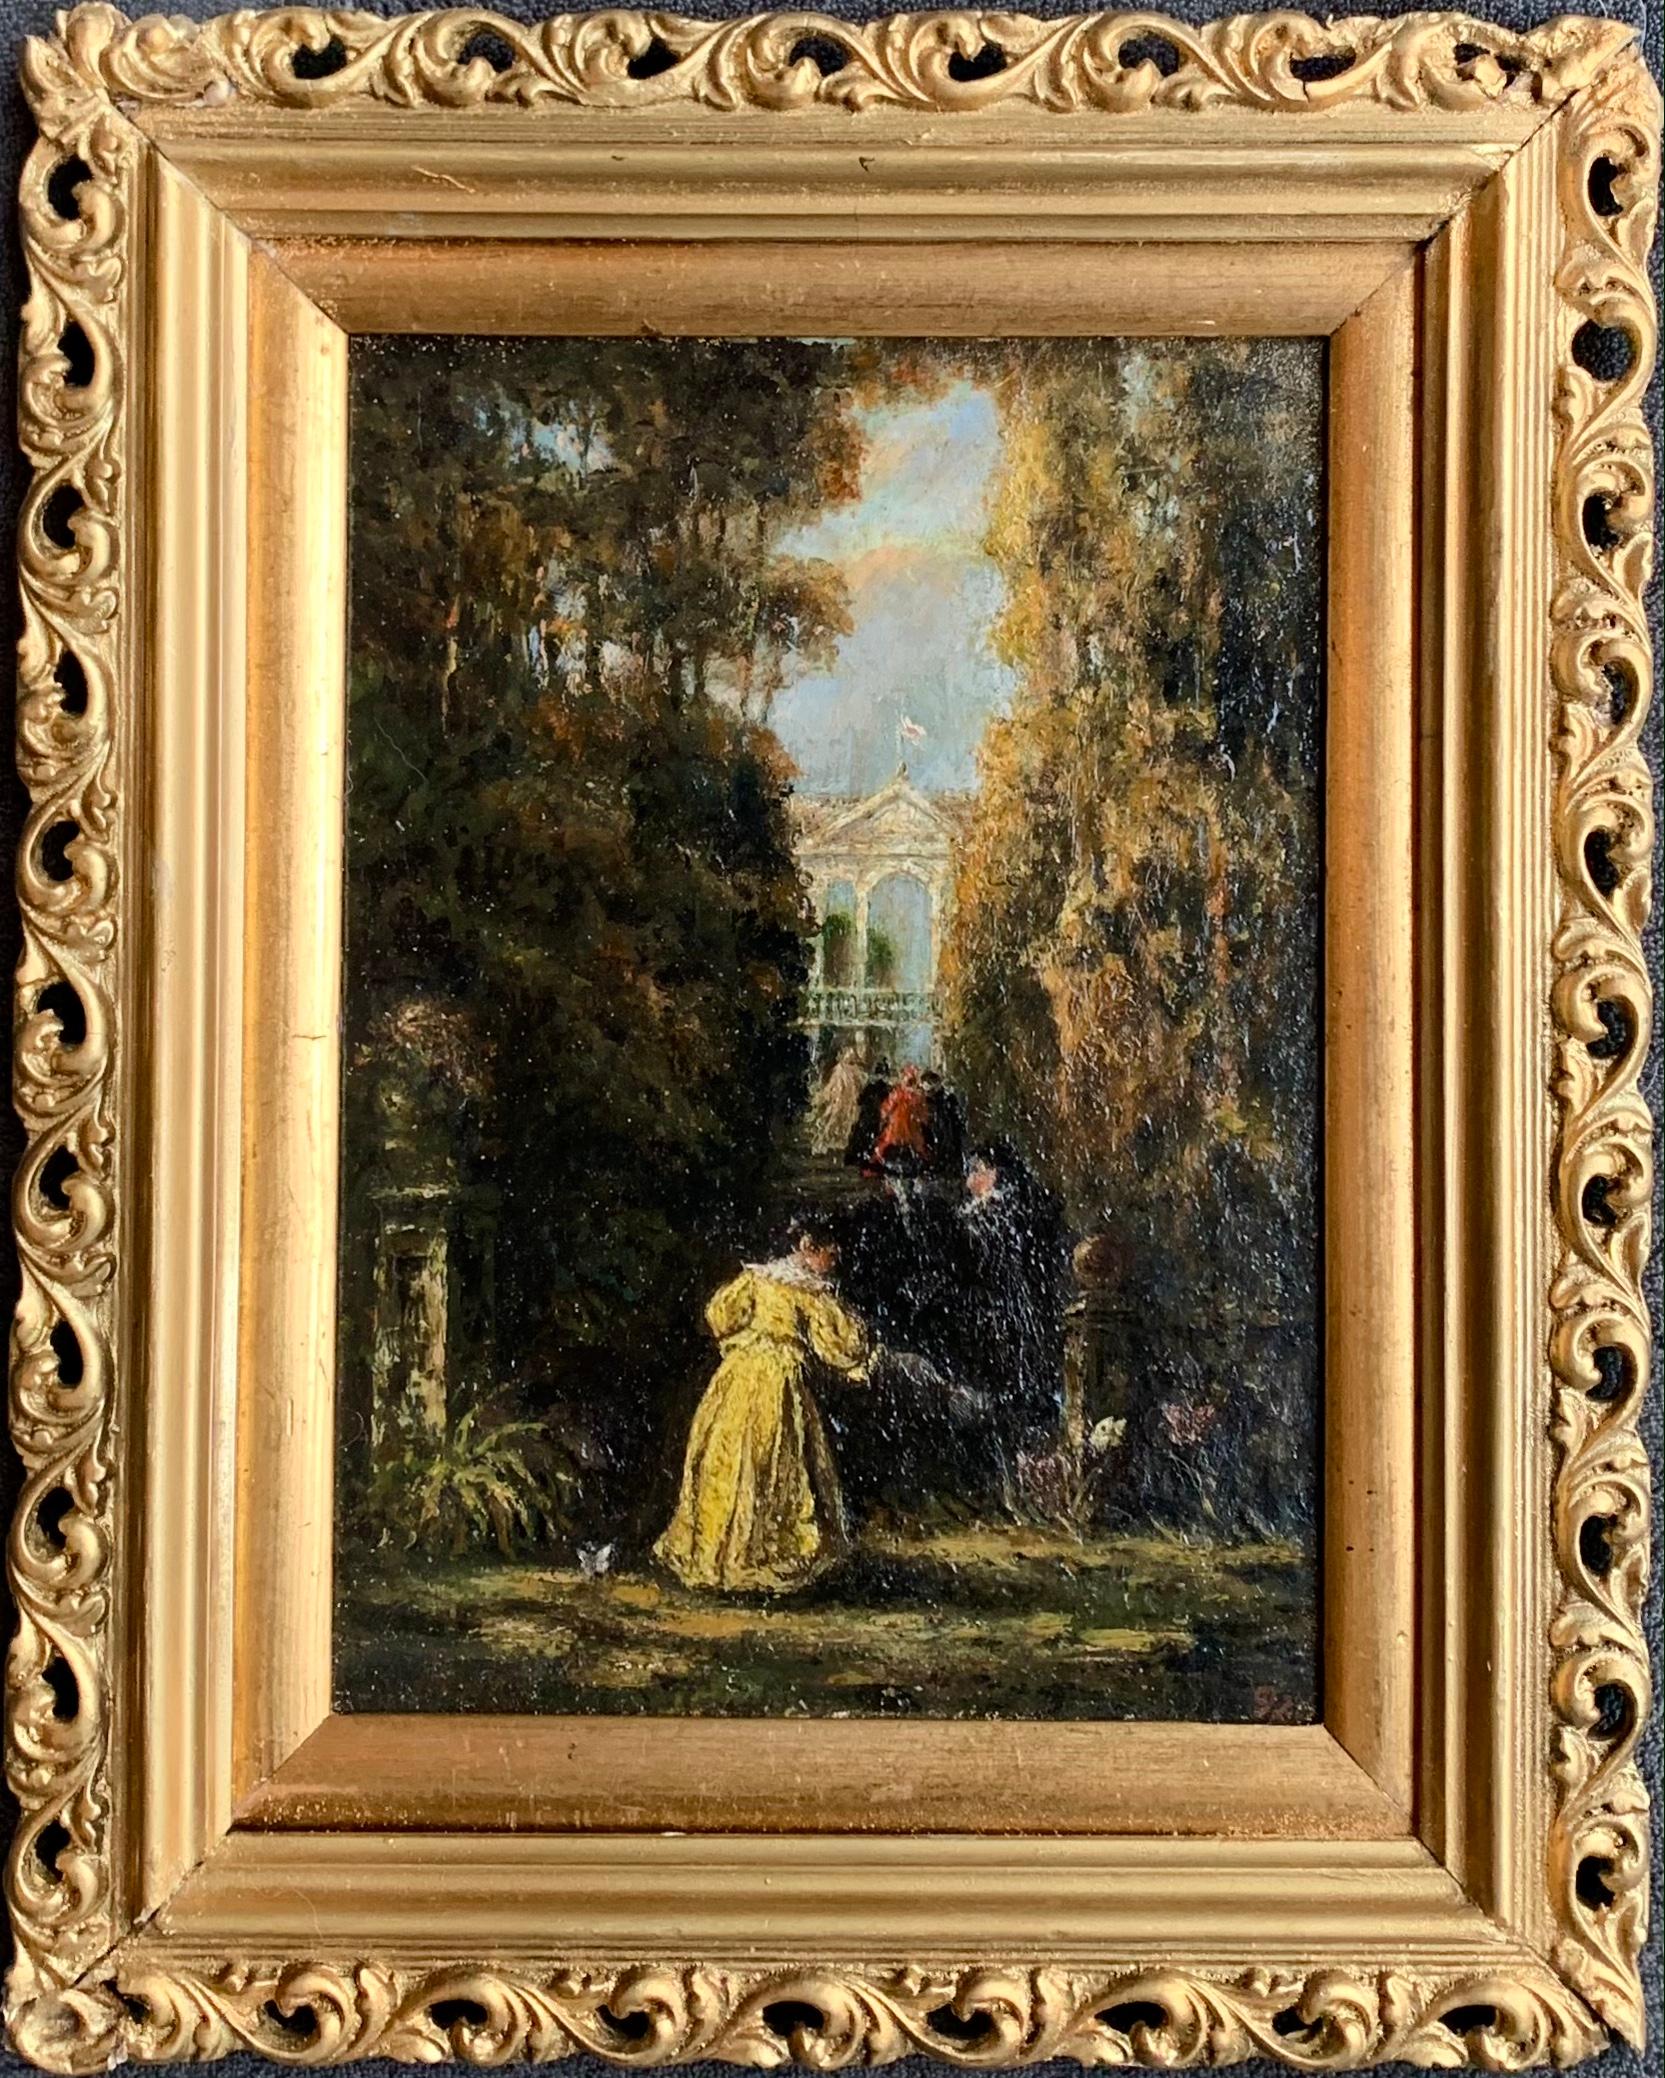 Narcisse Virgilio Díaz de la Peña Landscape Painting - 19th century French Barbizon school painting Elegant group genre figurative 